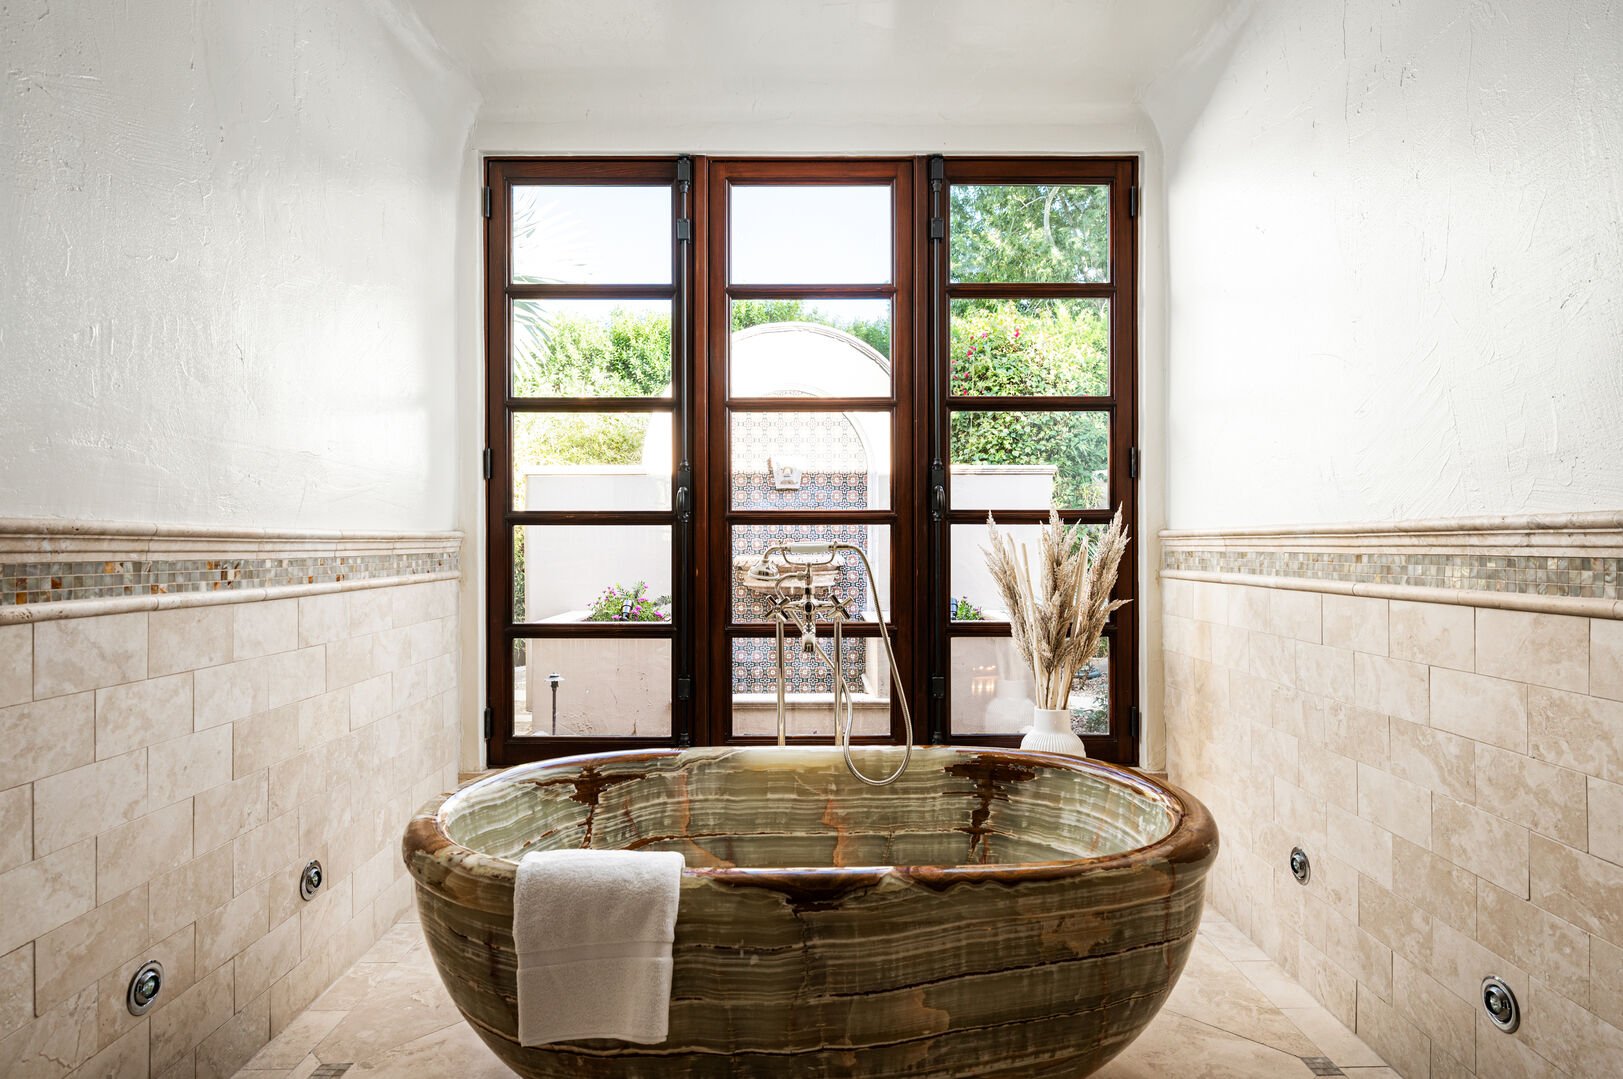 Soak in this amazing tub